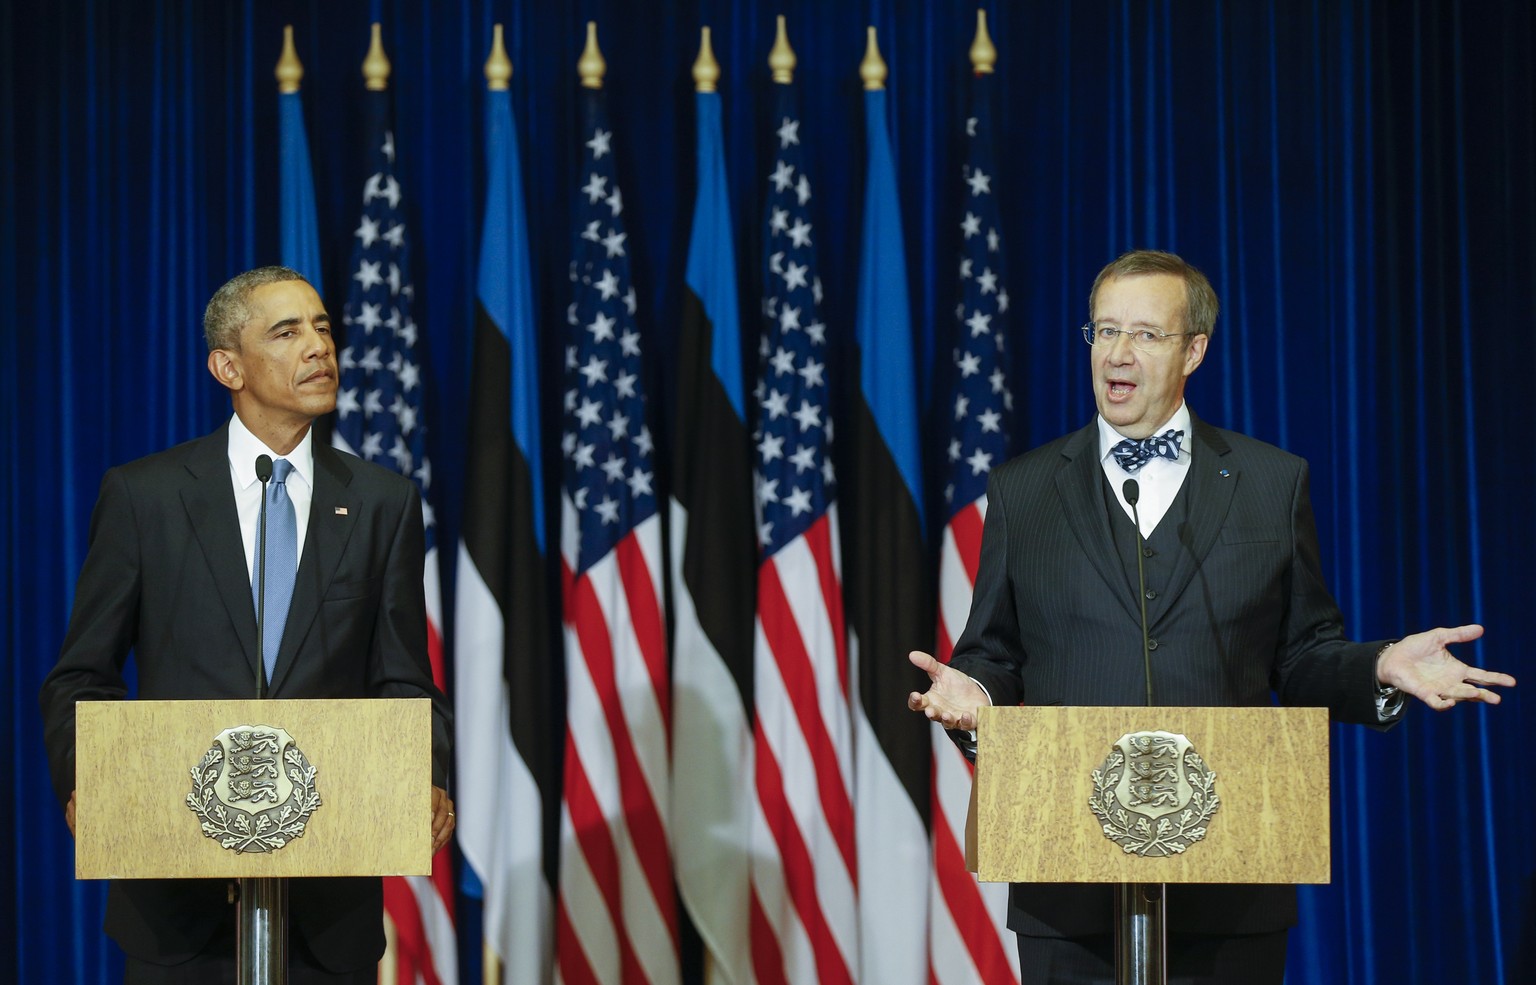 Estlands Staatschef Toomas Hendrik Ilves (rechts) stellte die Gründungsakte des NATO-Russland-Rates infrage.